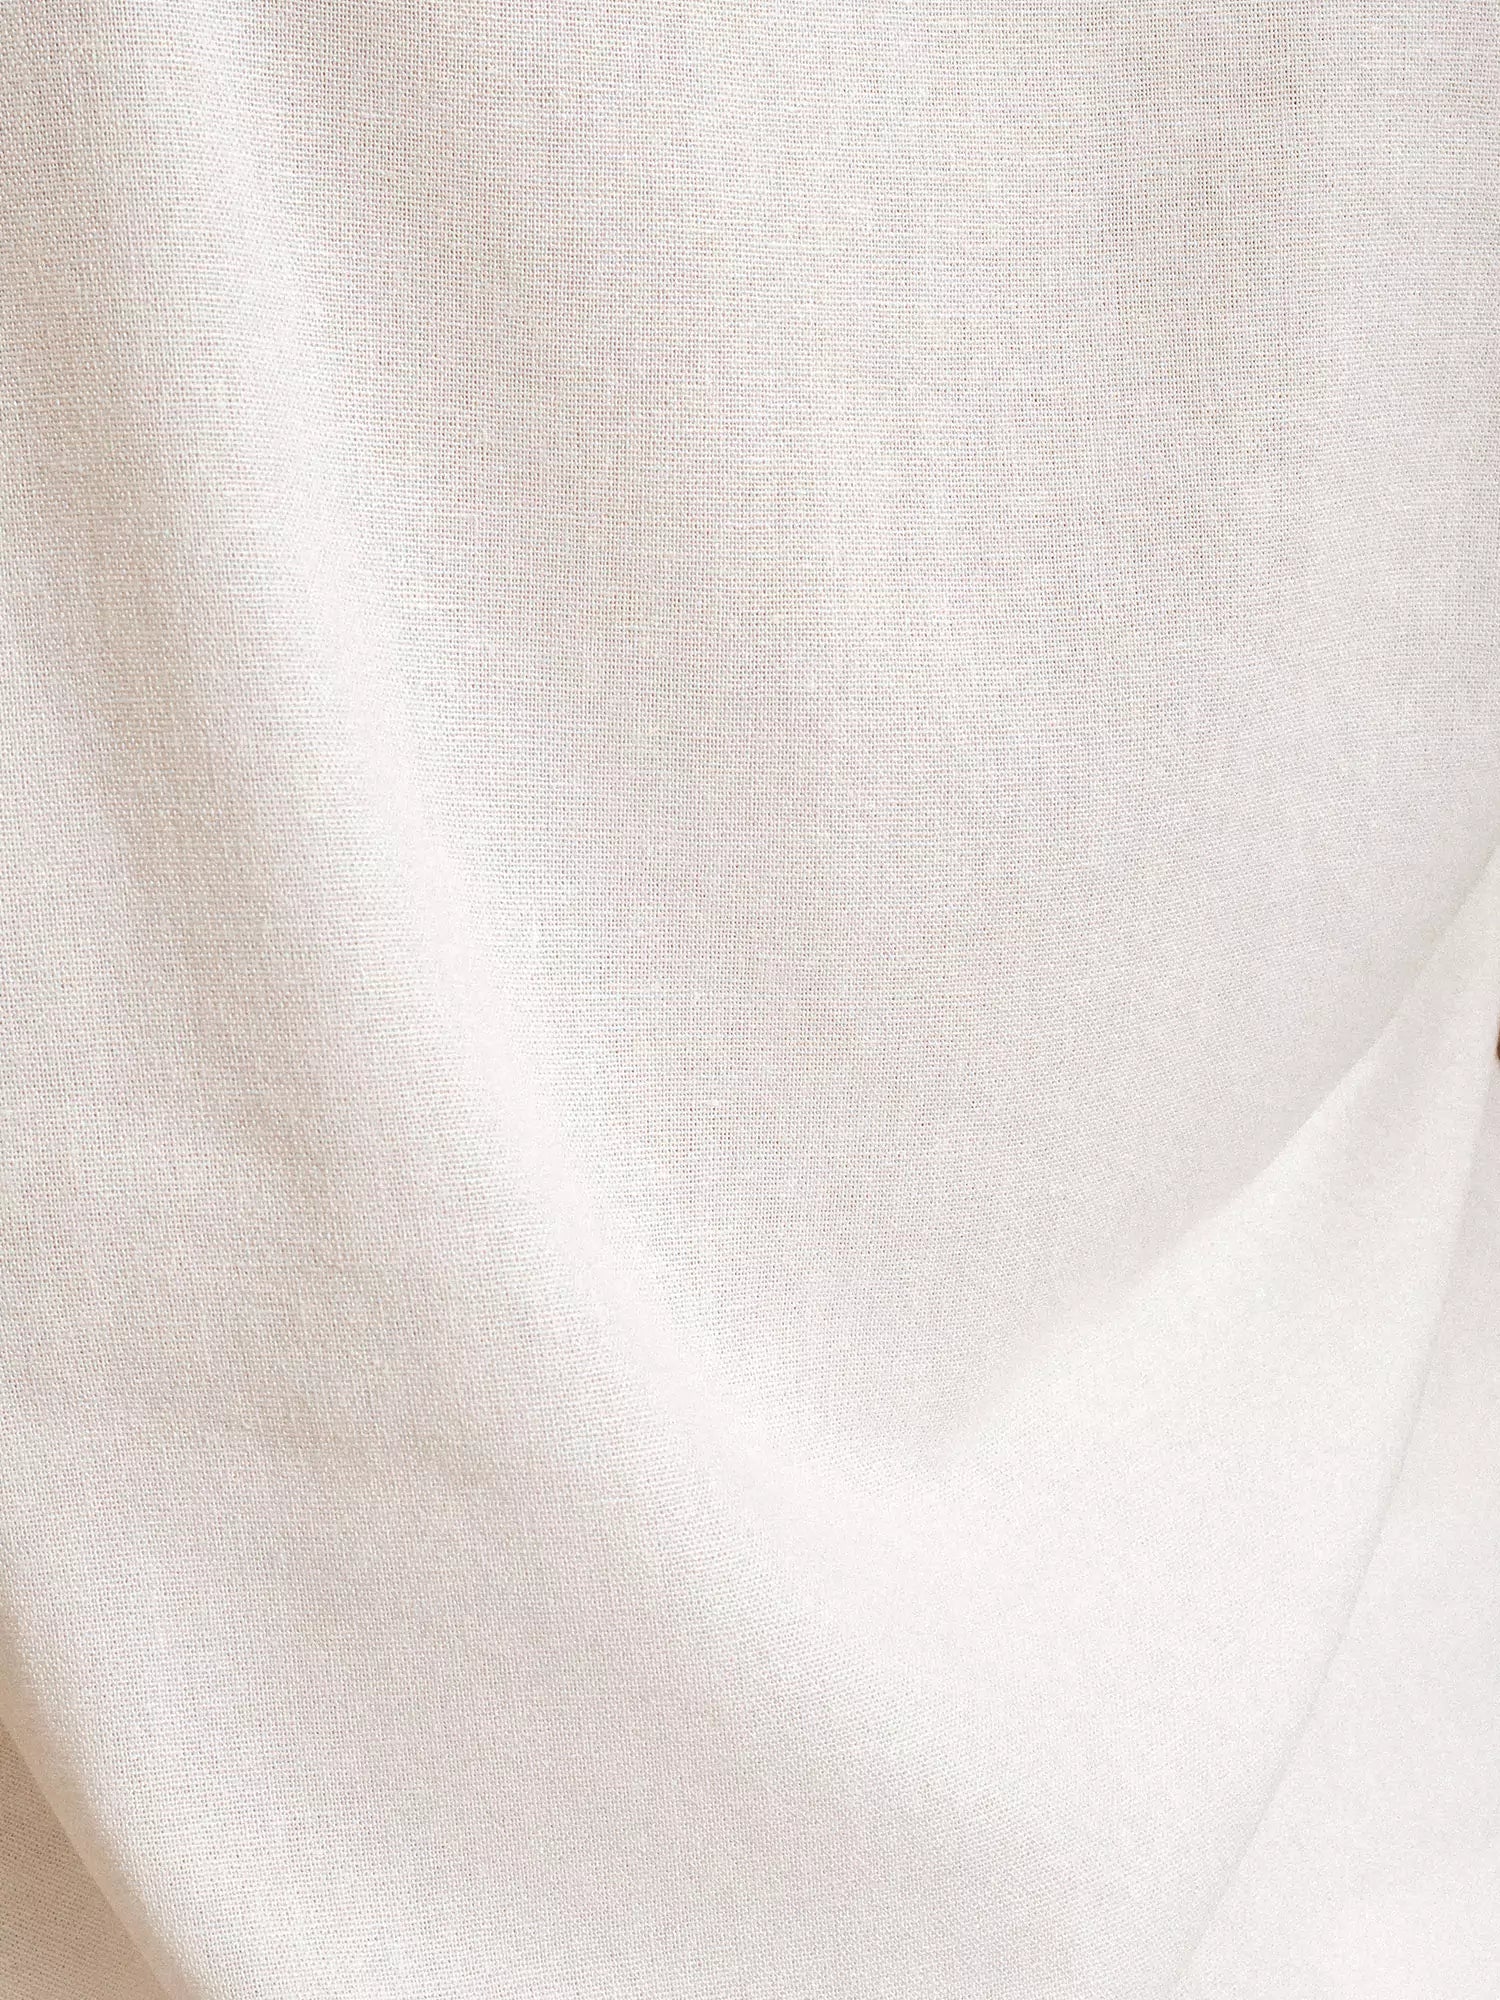 Camisa Manga Curta de Linho e Viscose FSC™ Branca Off White. Compre online moda sustentável e atemporal na Minimadeia. Roupas femininas estilosas, básicas e sustentáveis. Foto produto 10